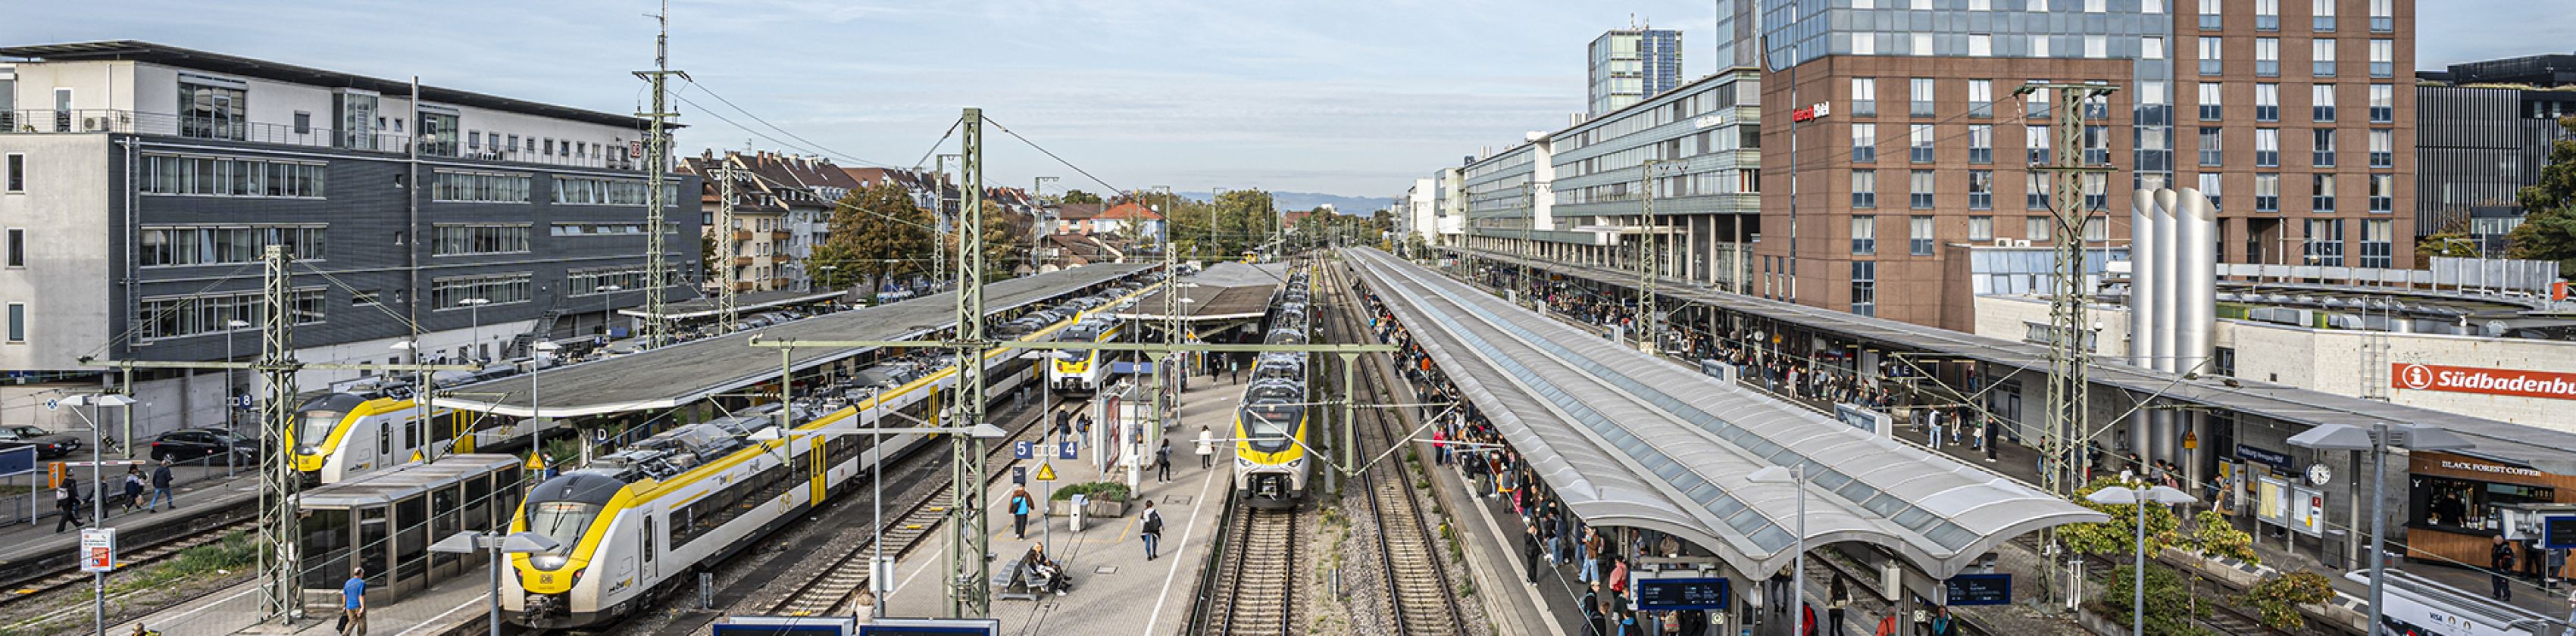 Hauptbahnhof-FWTM-Spiegelhalter (5), © FWTM-Spiegelhalter